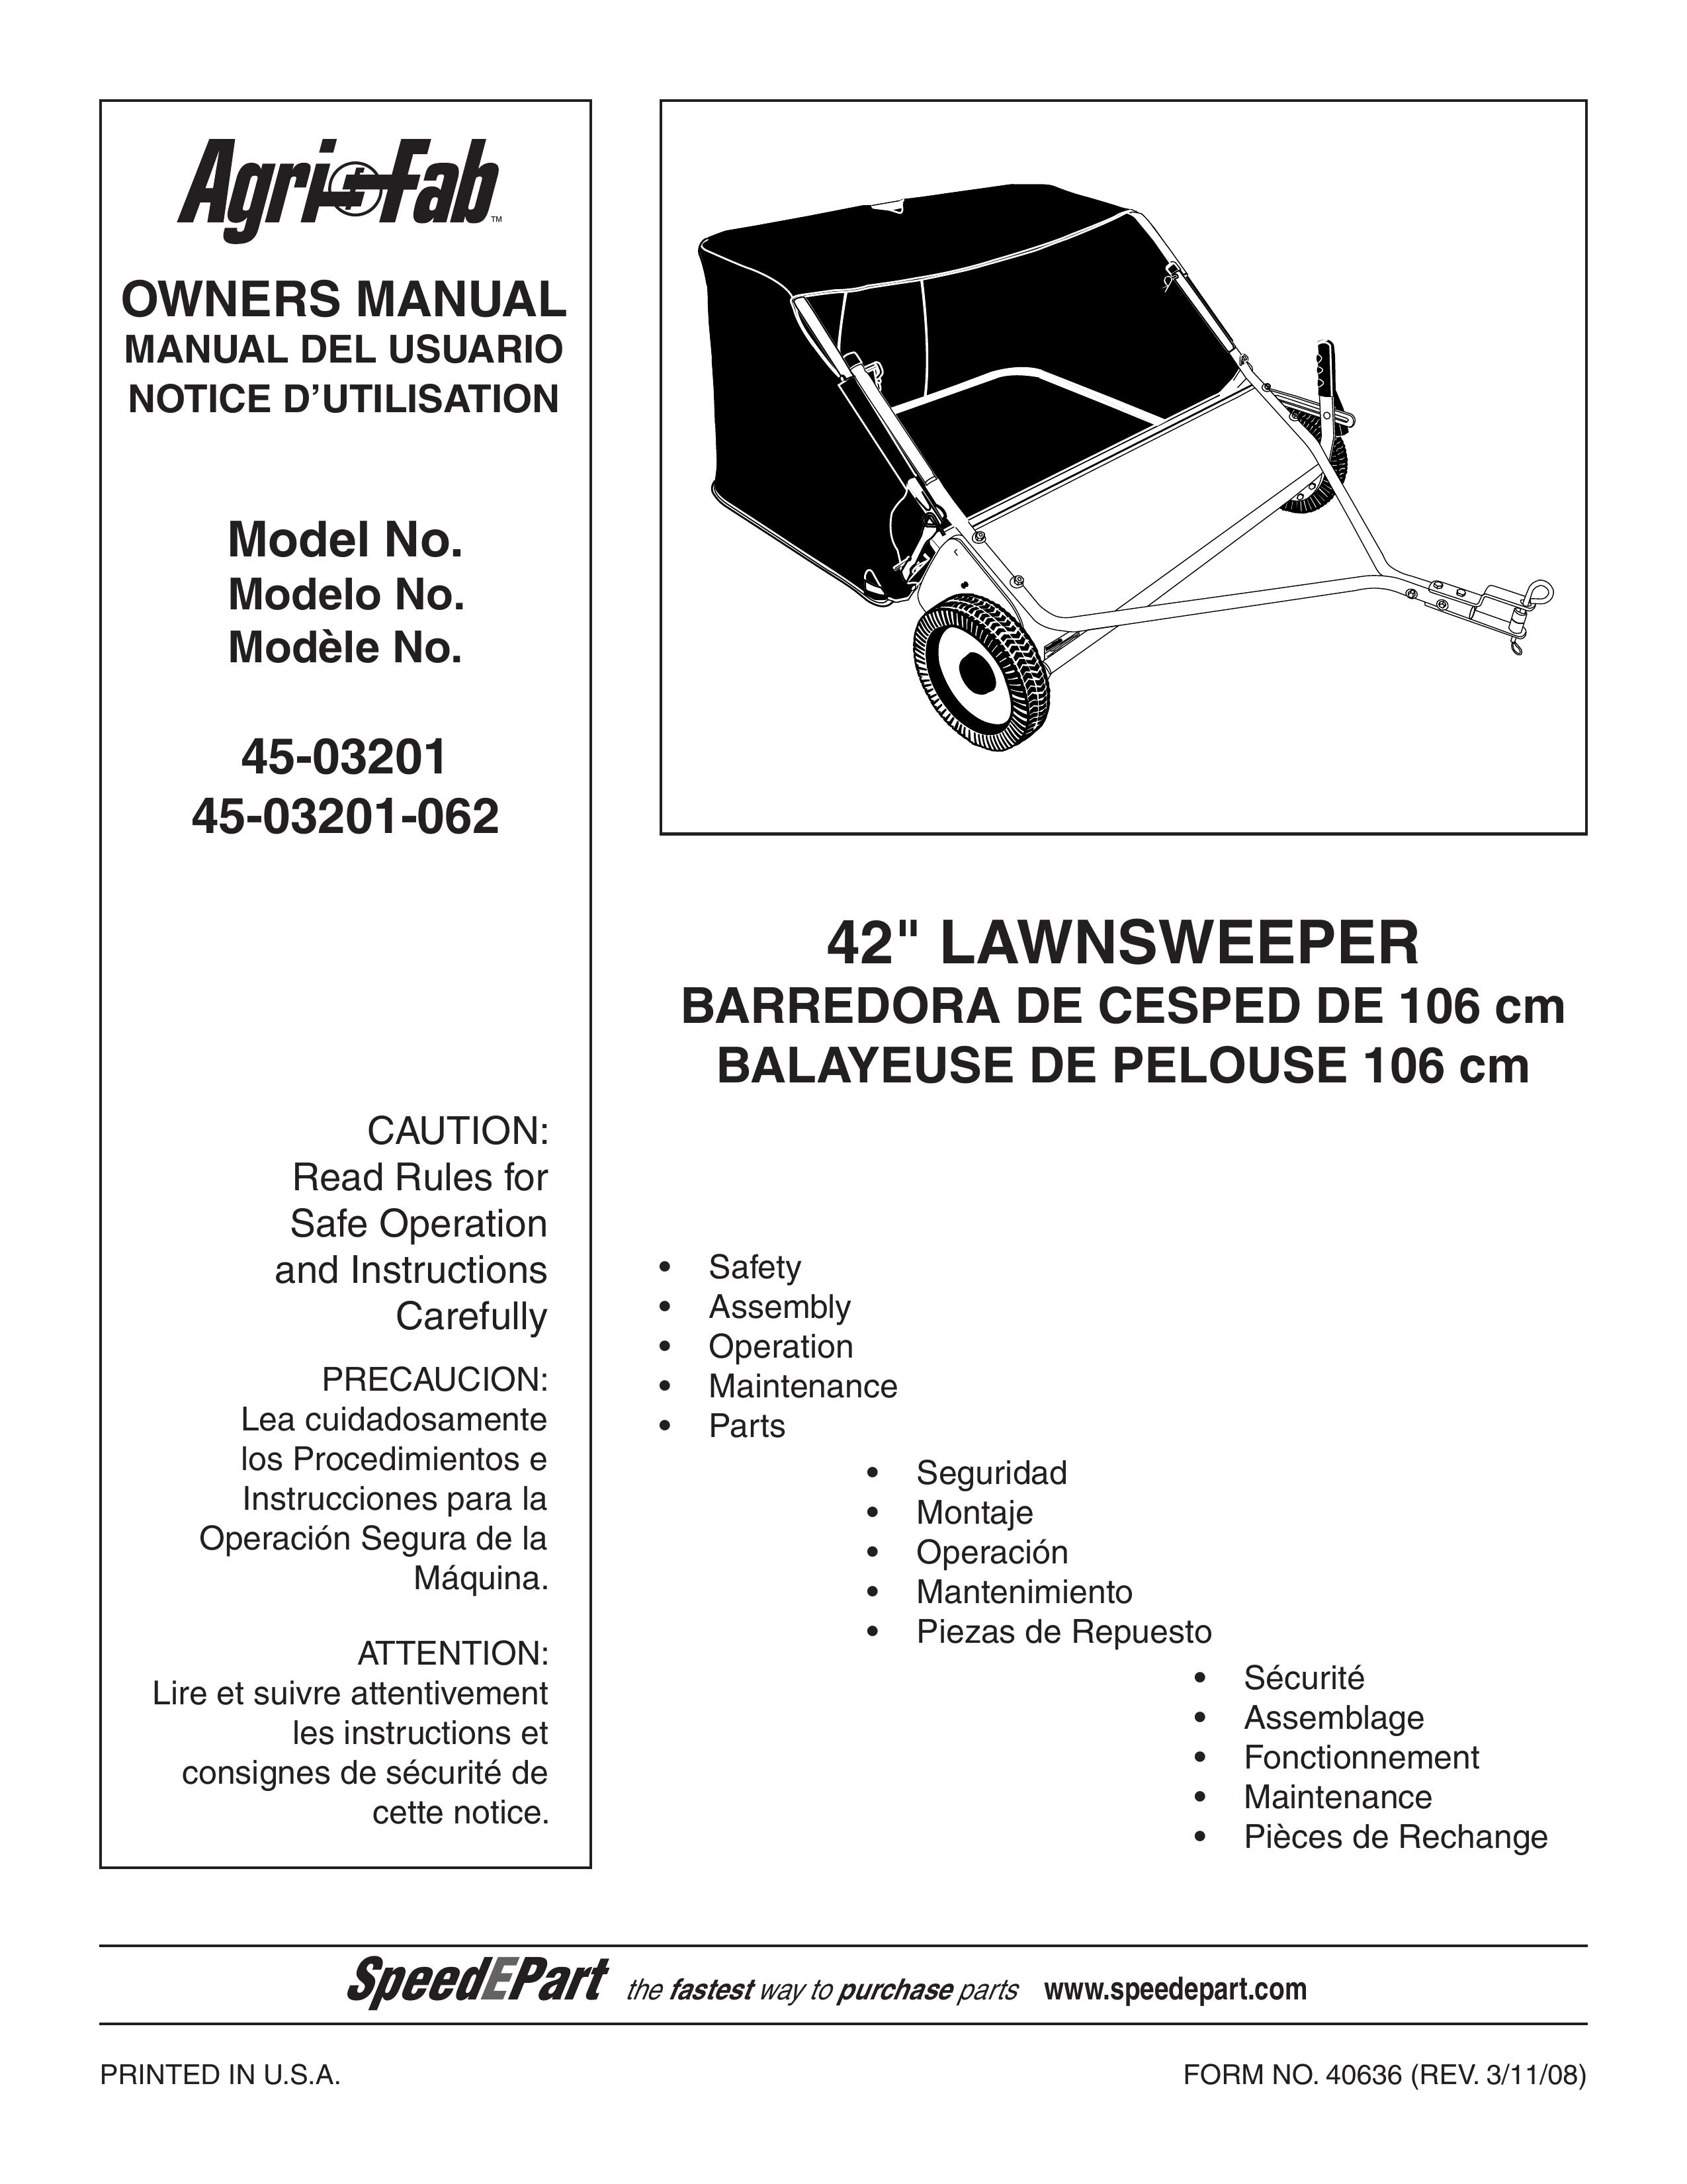 Agri-Fab 45-03201-062 Lawn Sweeper User Manual